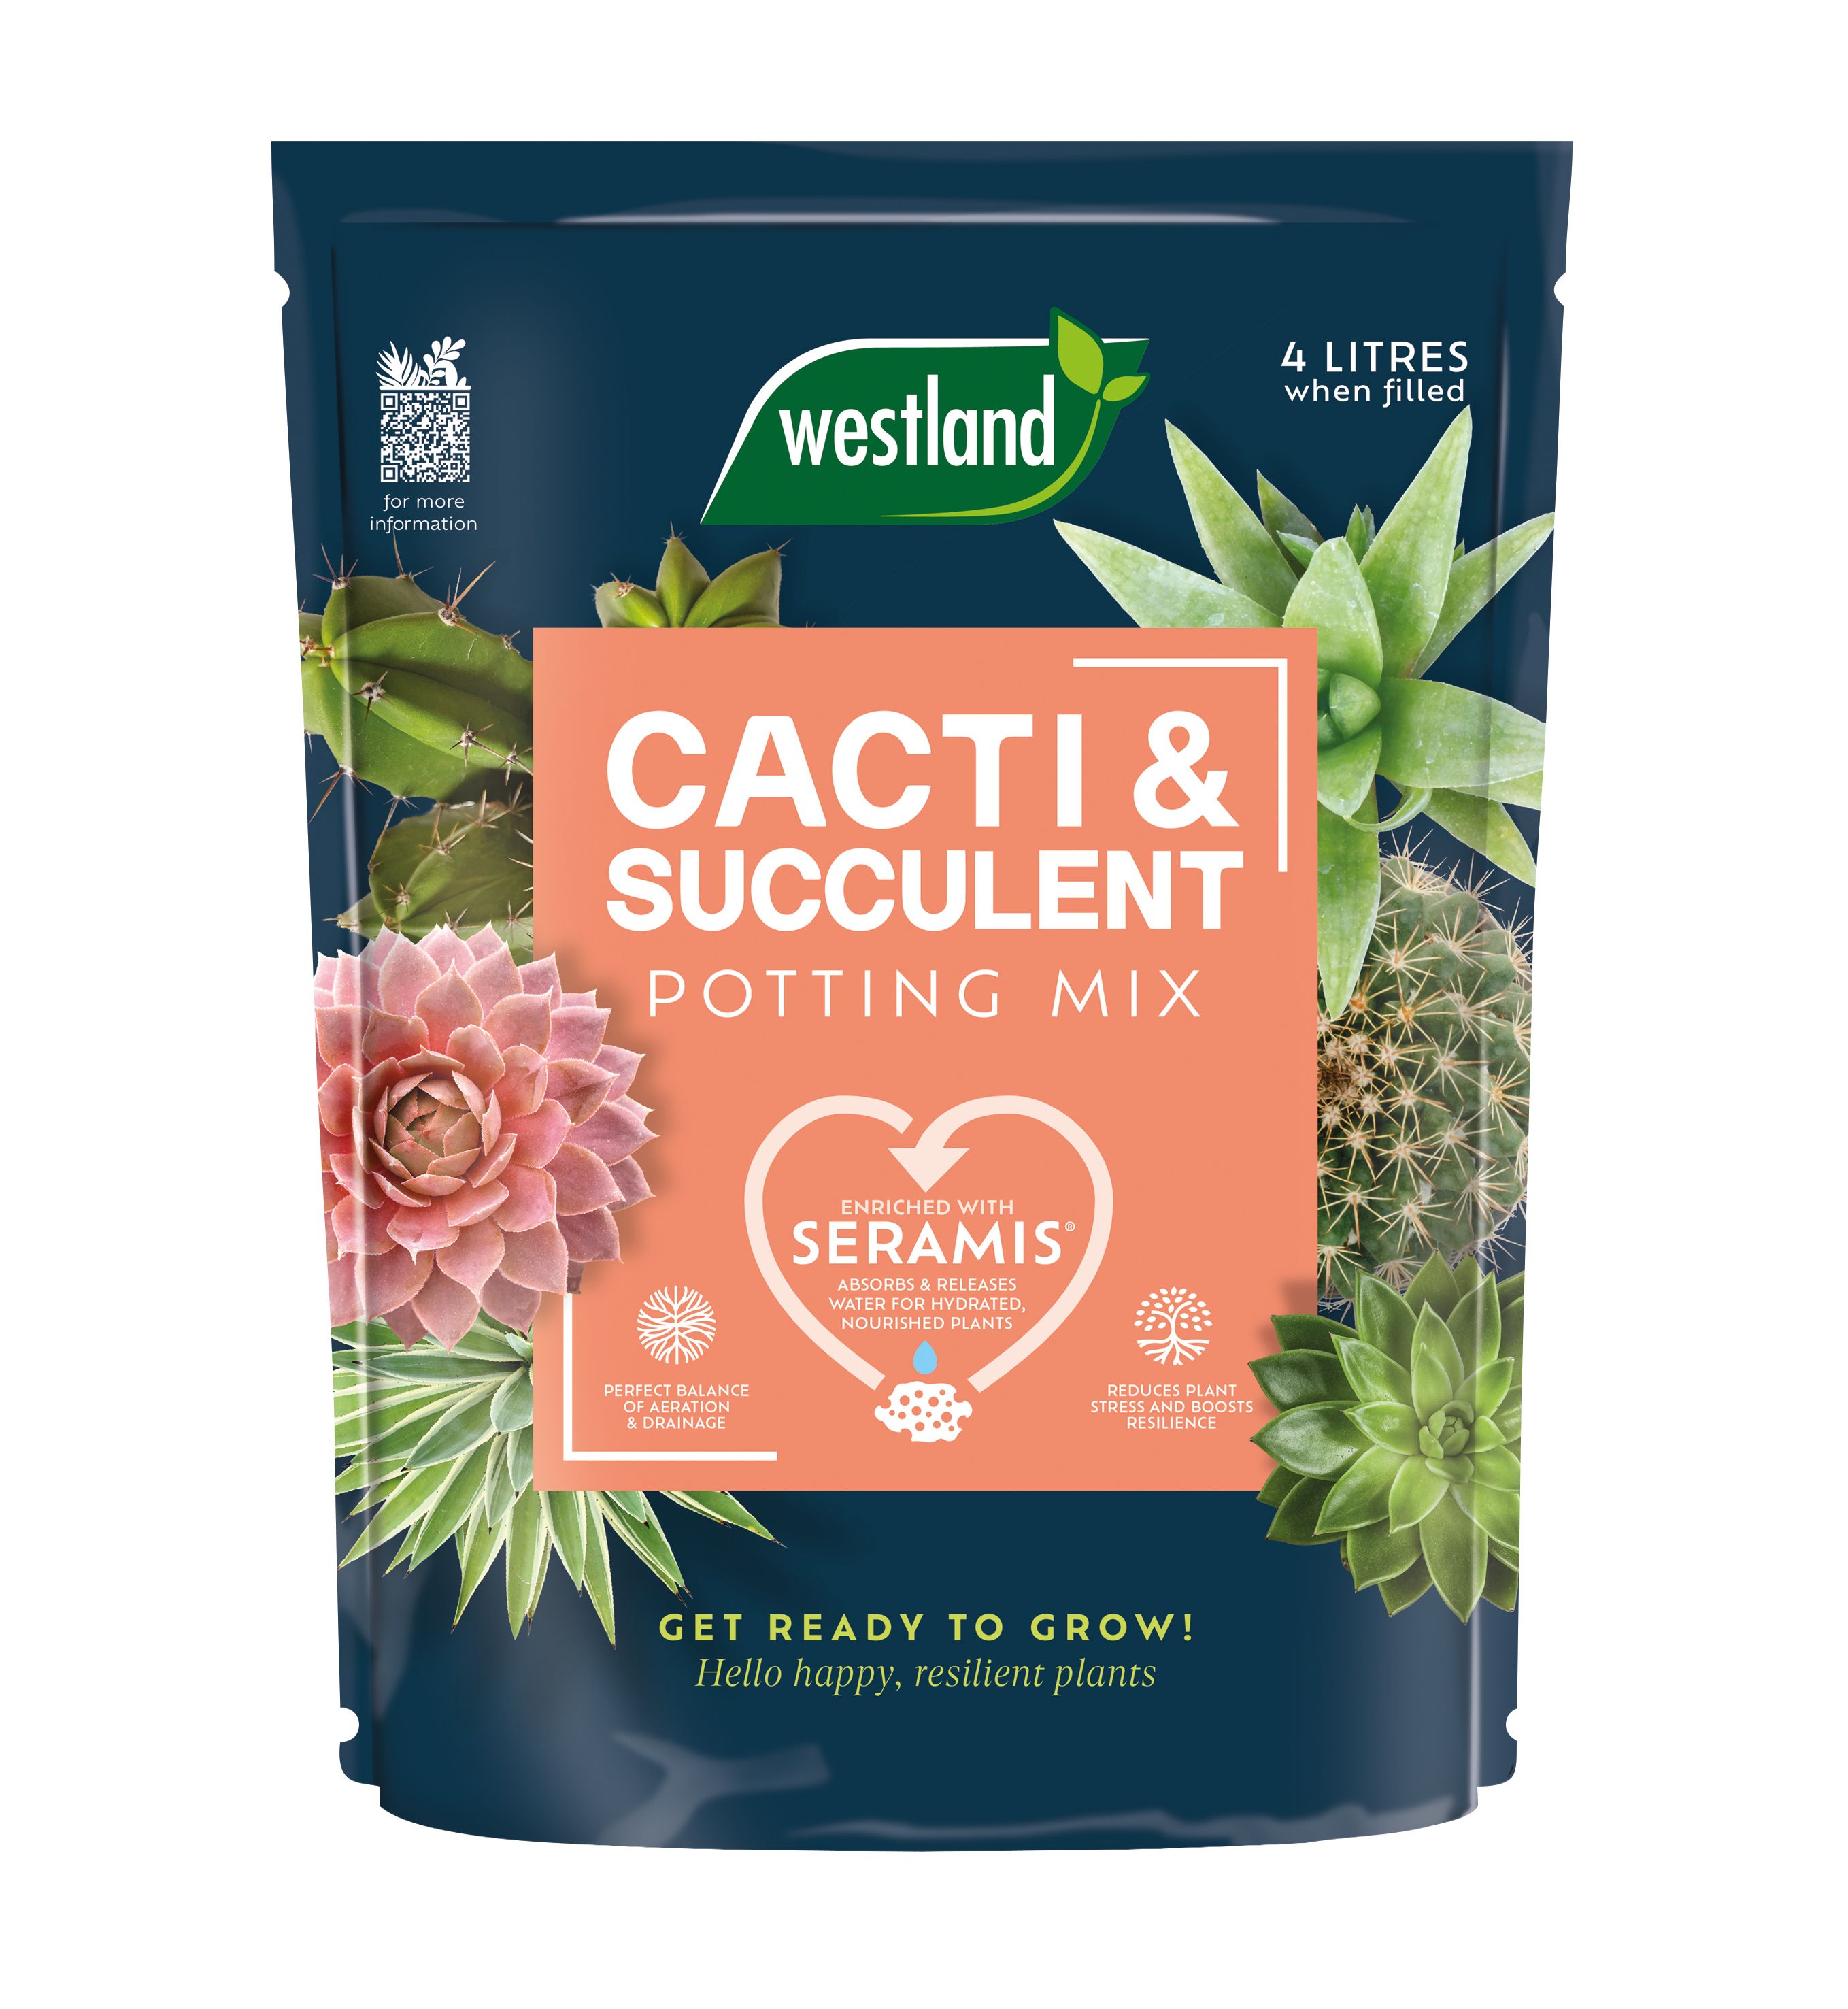 Westland Potting mix Cacti & succulent Compost 4L Bag